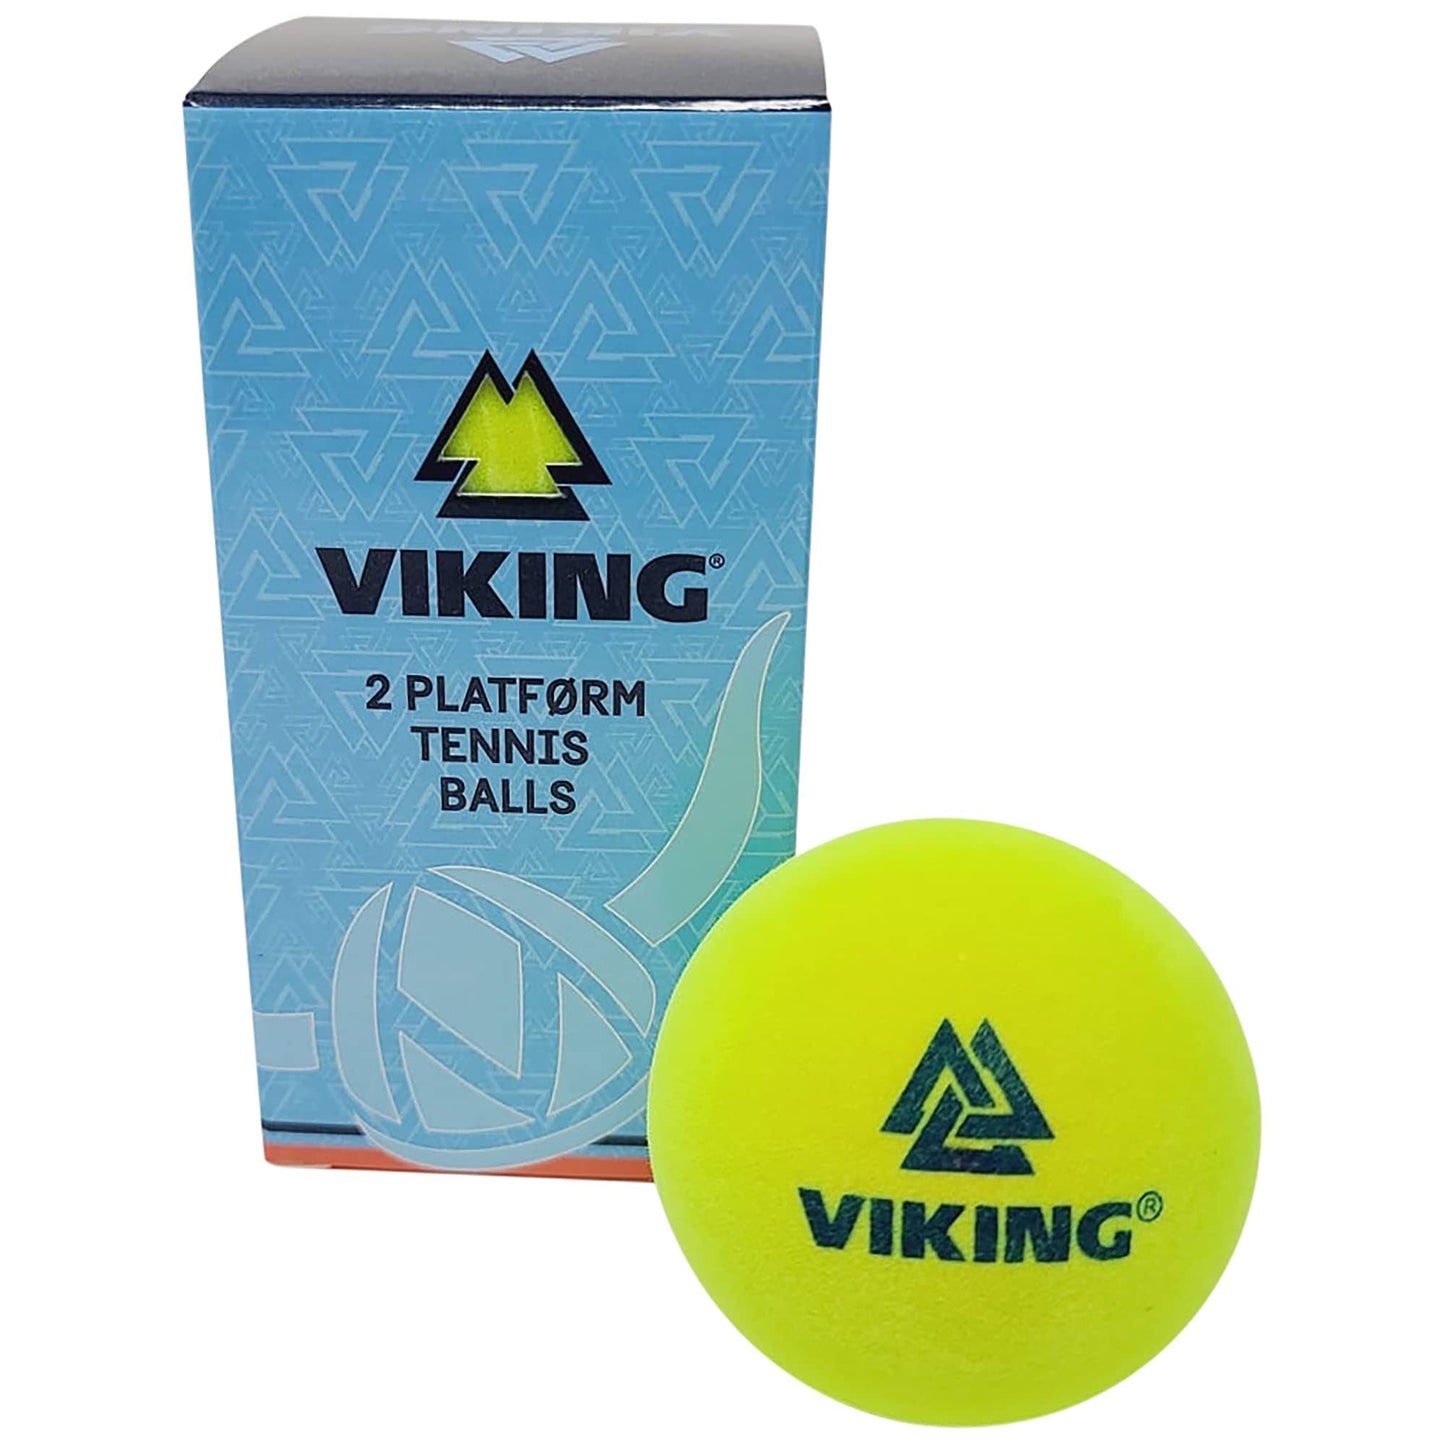 Viking extra duty ball